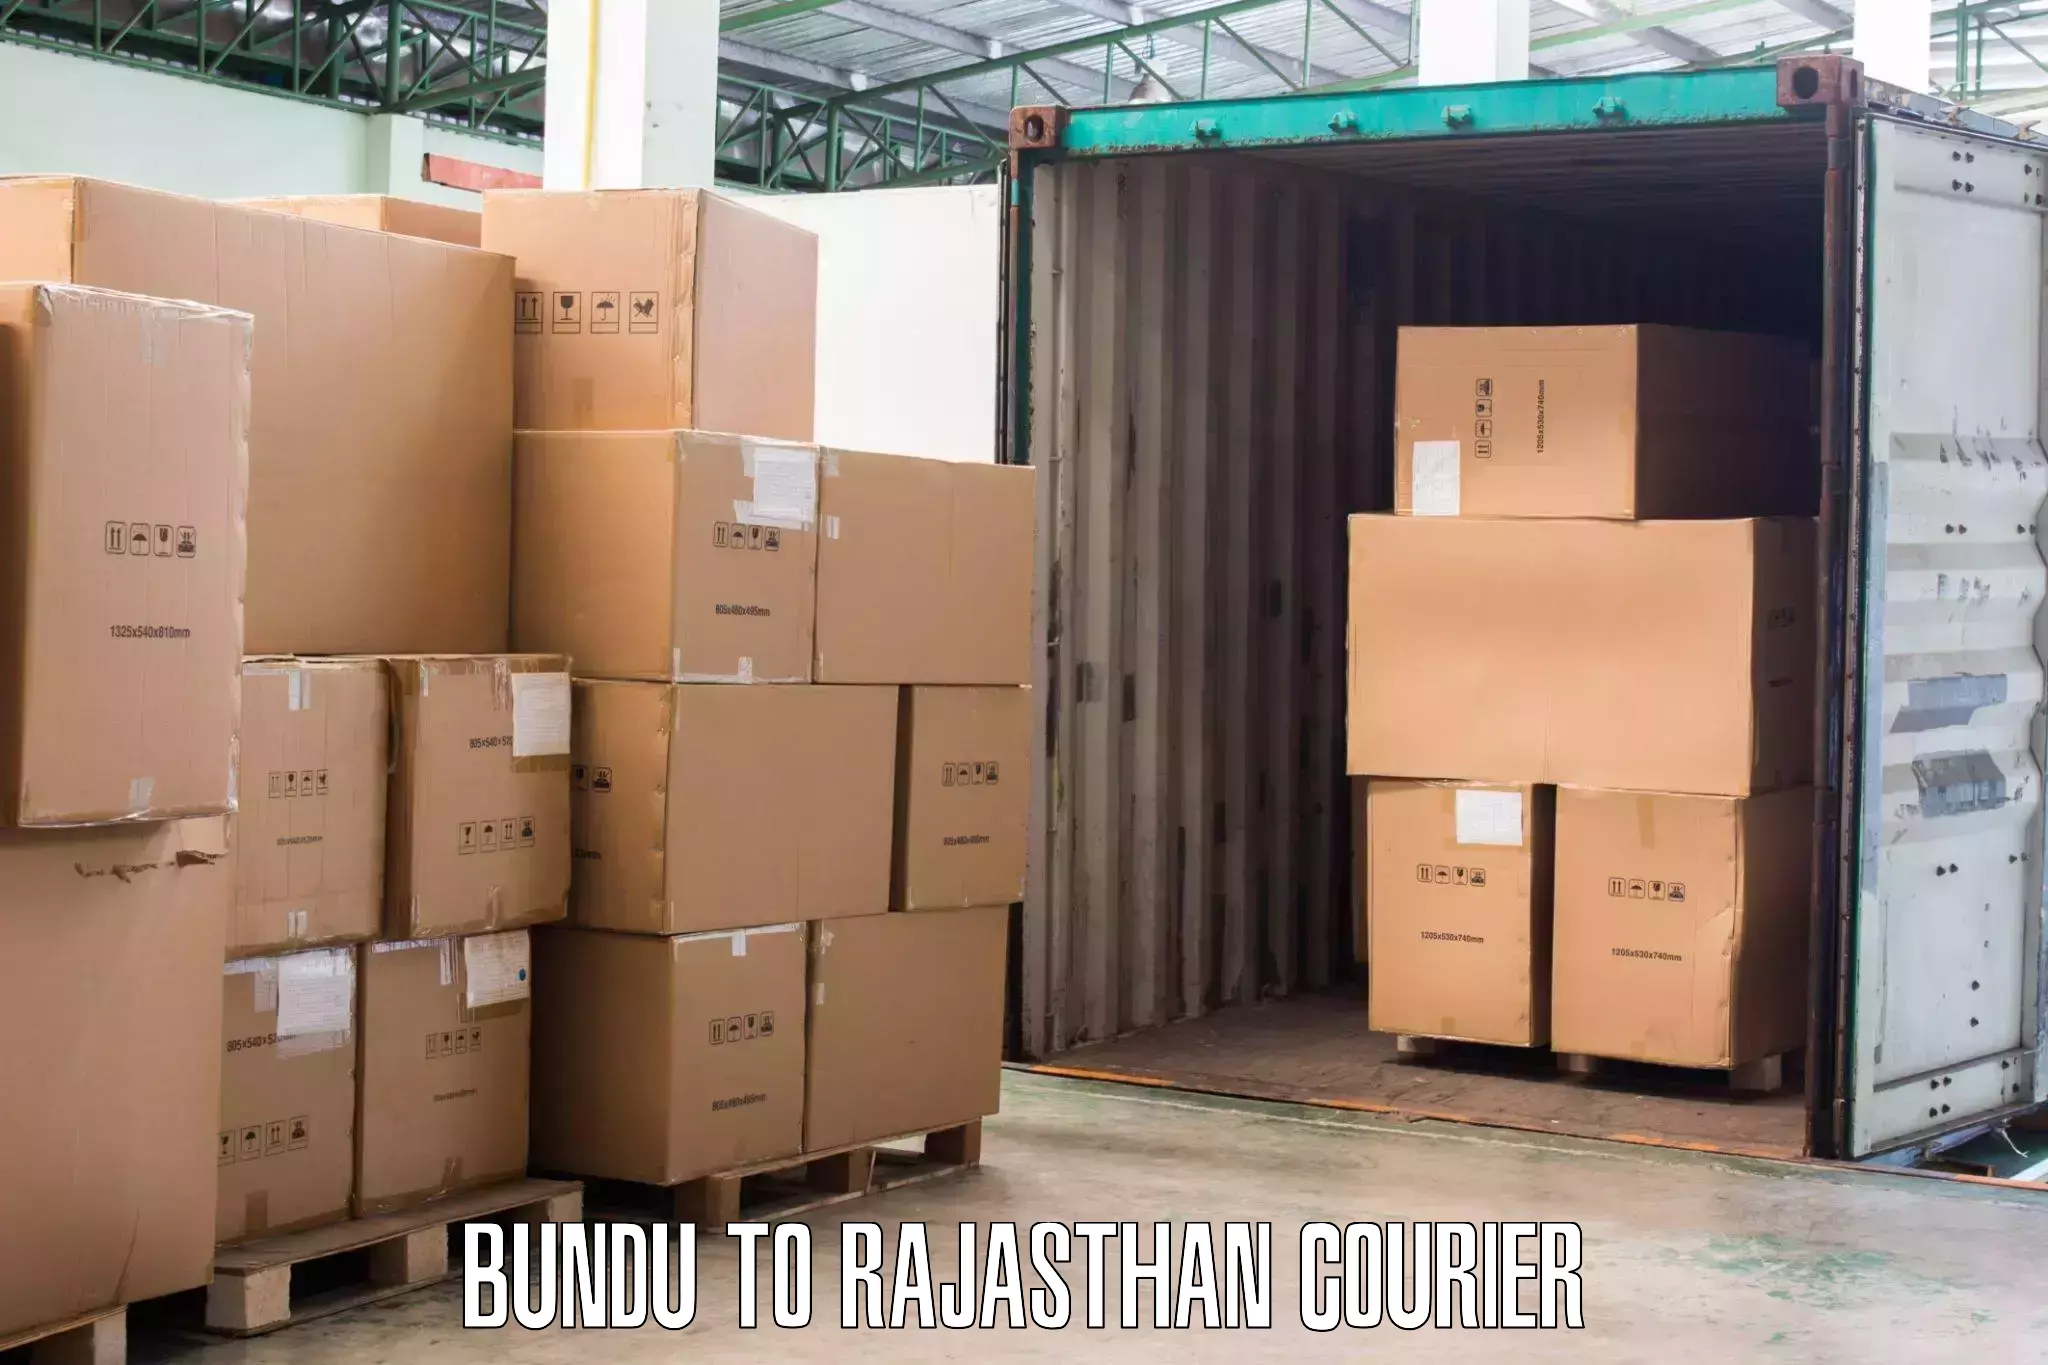 Furniture moving experts Bundu to Bundi